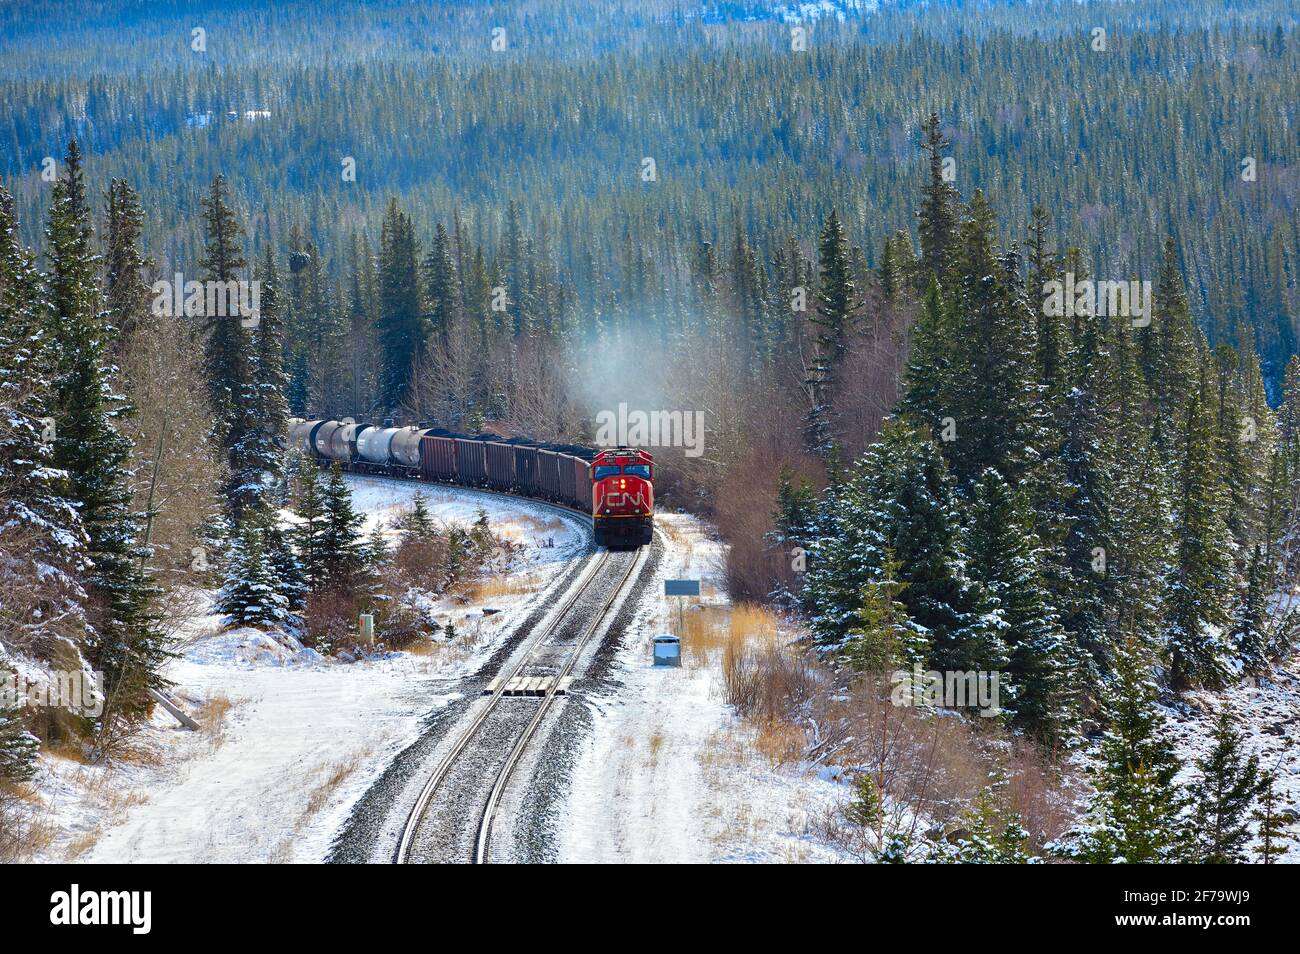 Ein kanadischer Güterzug, der mit Eisenbahnwaggons beladen ist, fährt um eine Ecke in einem bewaldeten Gebiet der felsigen Berge von Alberta, Kanada. Stockfoto